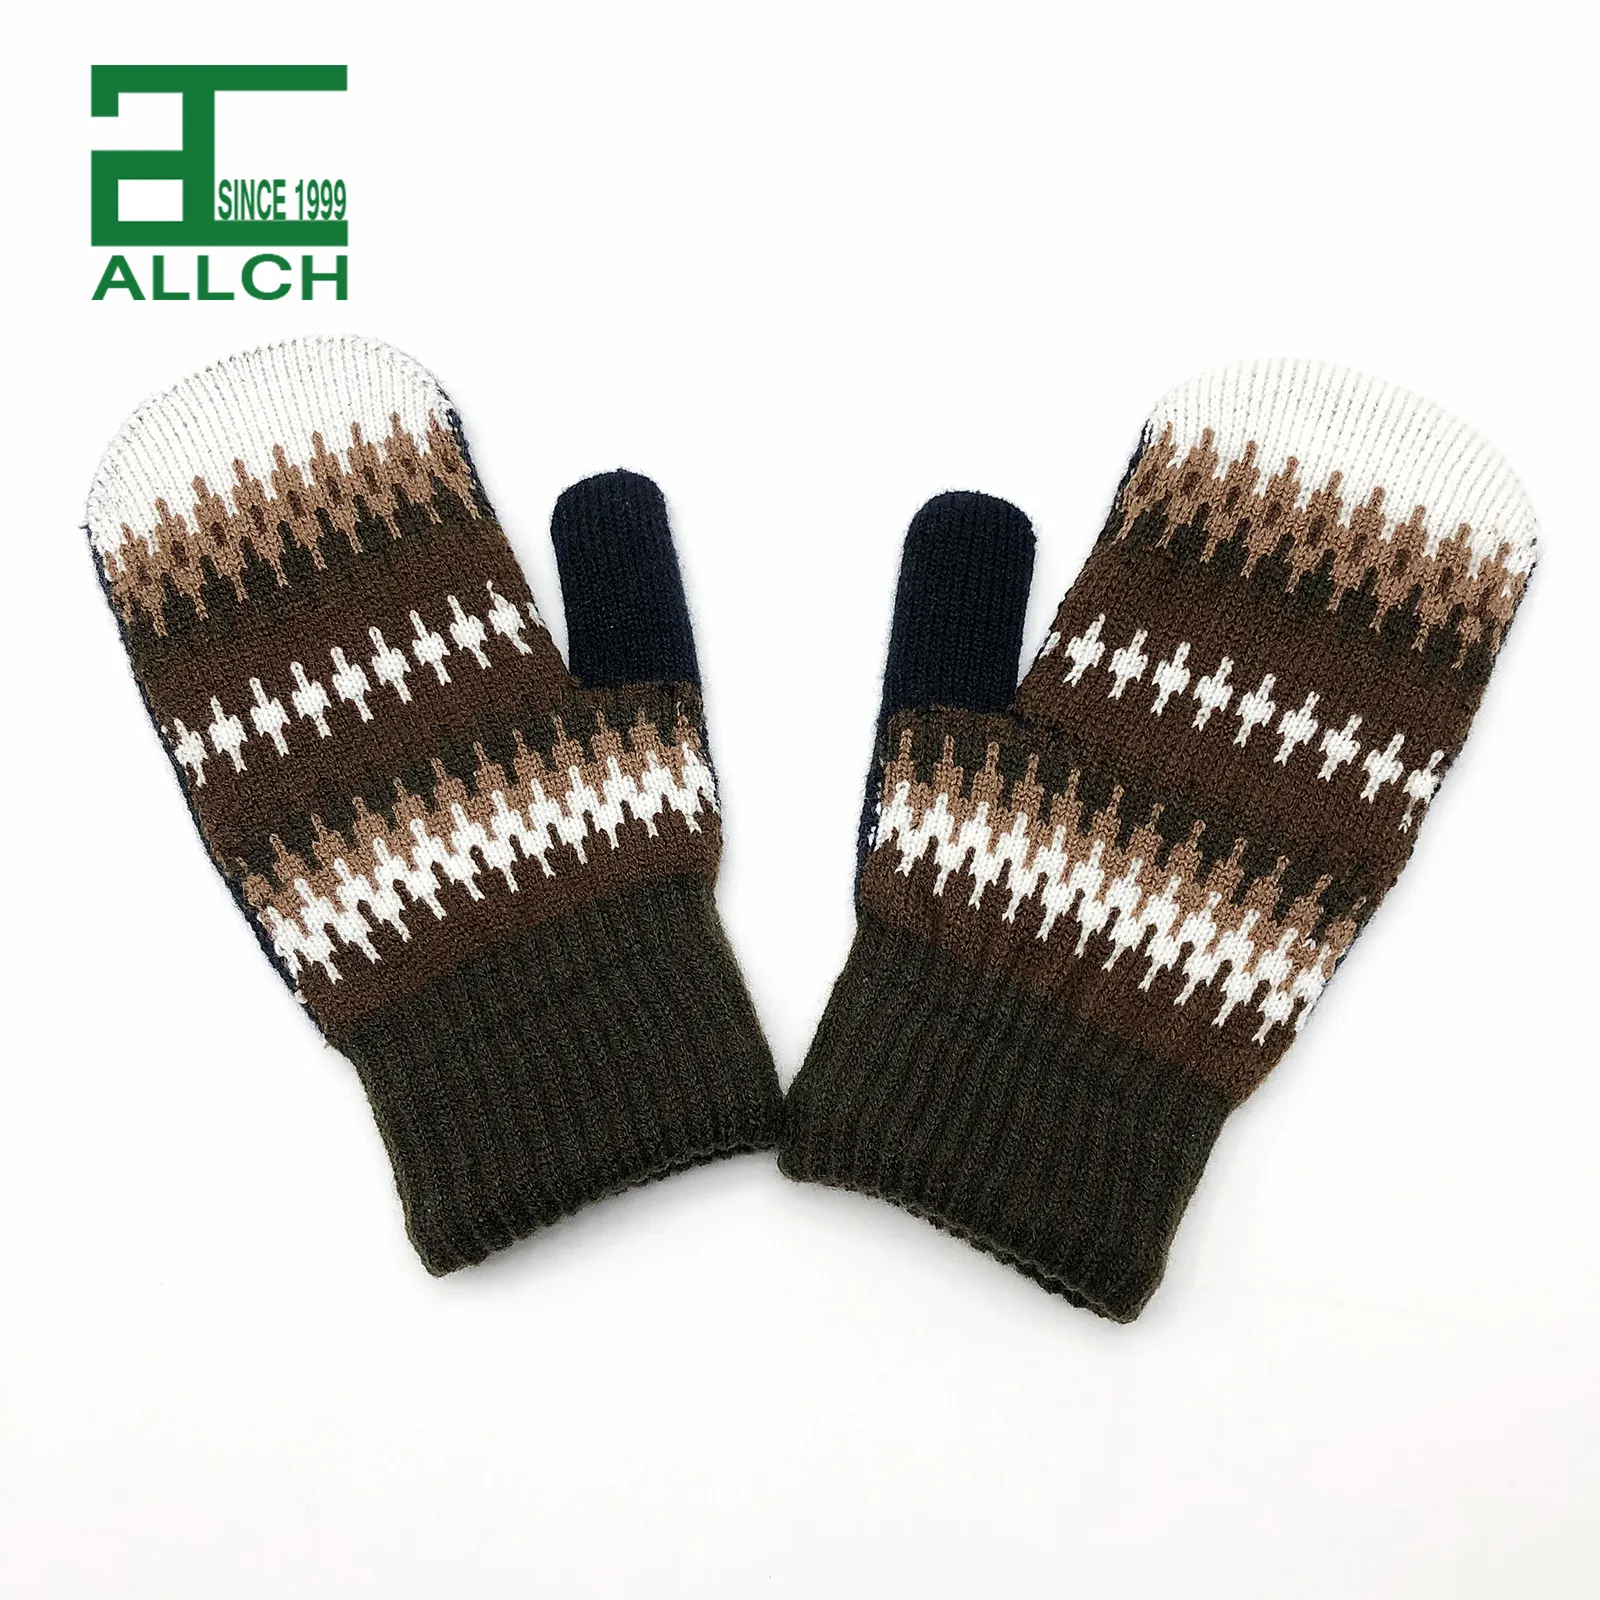 ALLCH RTS ถุงมือสองชั้นสามารถใช้ได้ทั้งชายและหญิง,ถุงมือผ้าแจ็คการ์ดให้ความอบอุ่นในฤดูหนาว